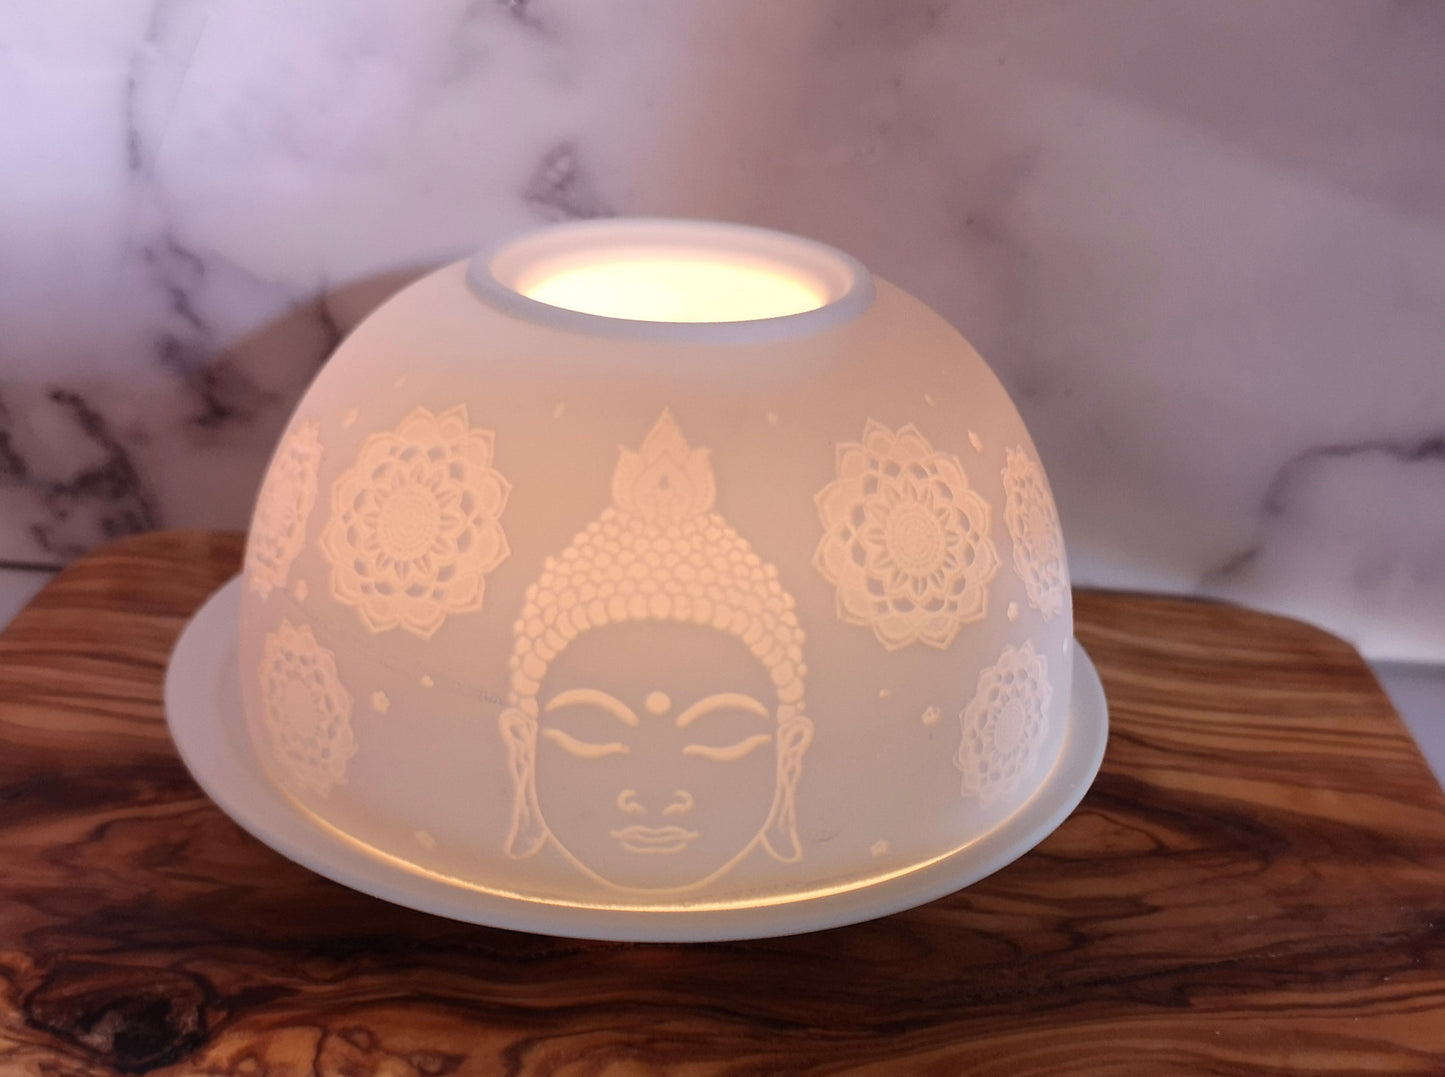 White candle holder - Buddha